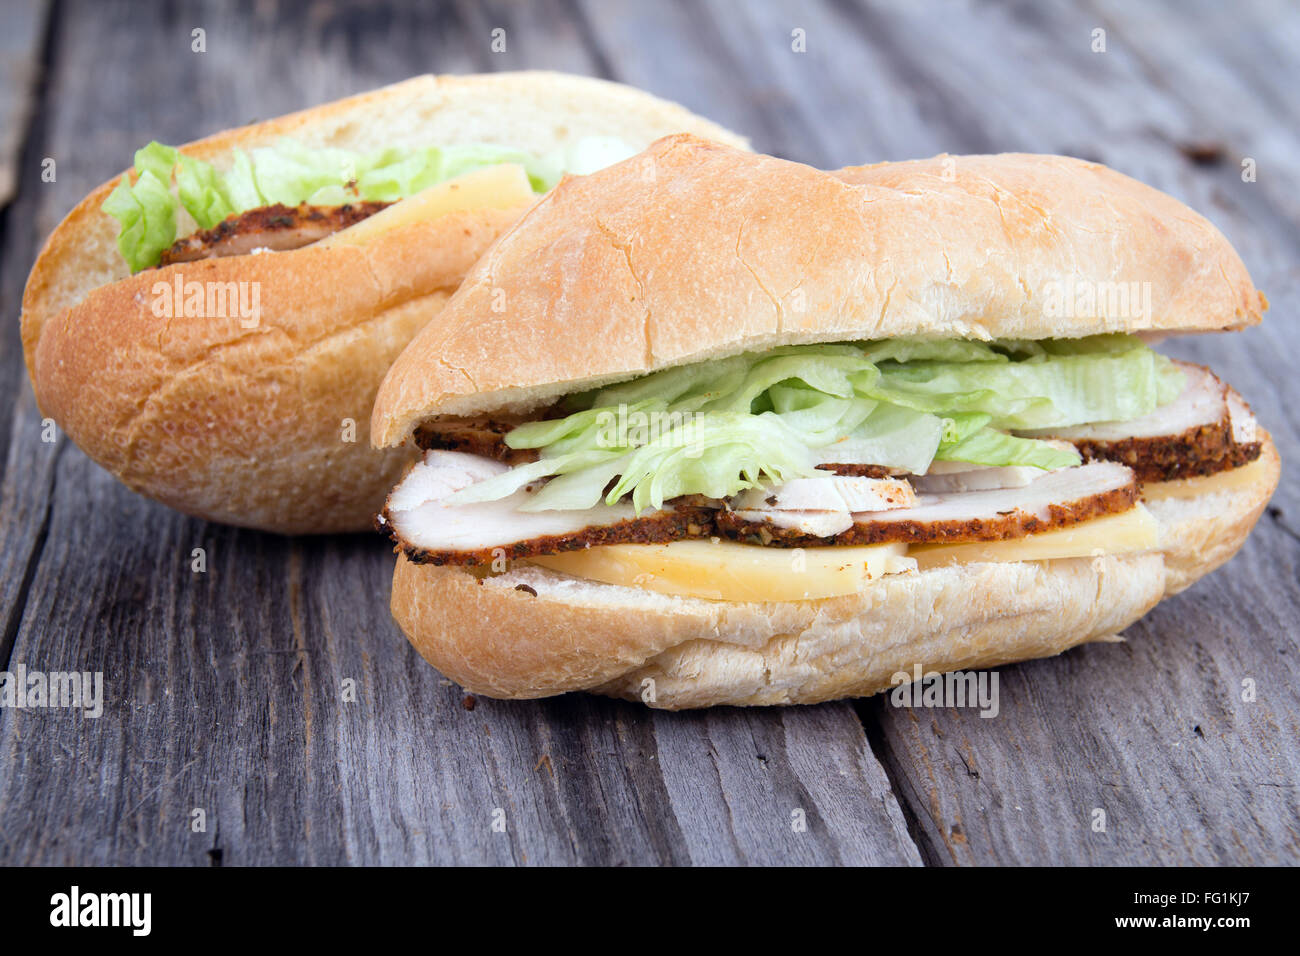 smoked turkey mini sandwiches on table Stock Photo